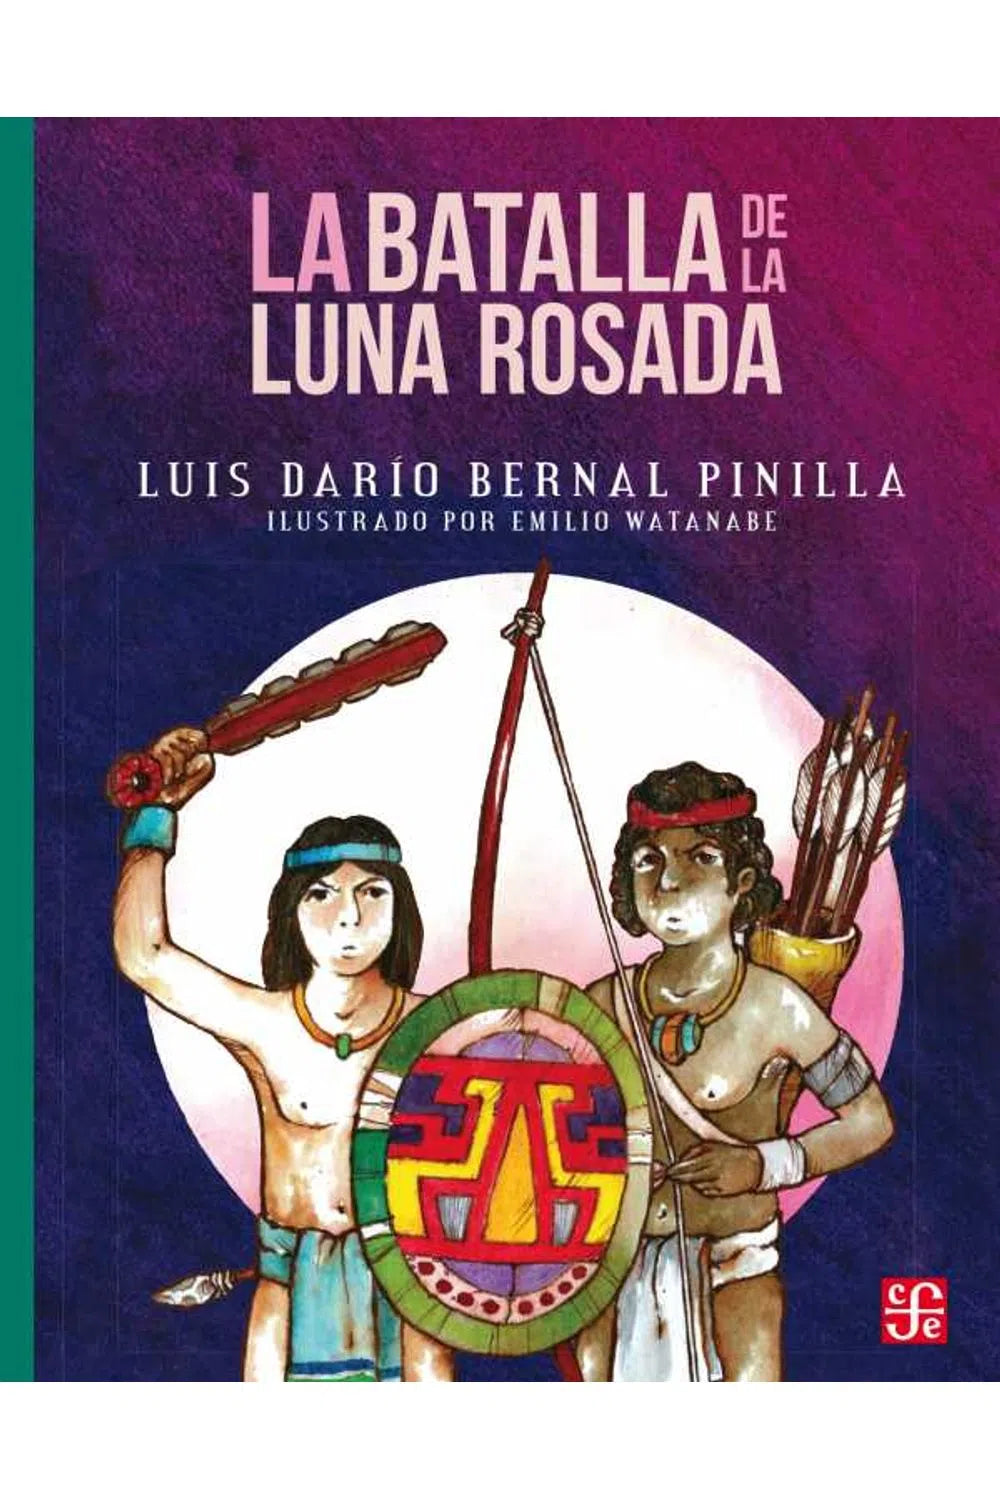 La batalla de la luna rosada - Luis Darío Bernal Pinilla y Emilio Watanabe